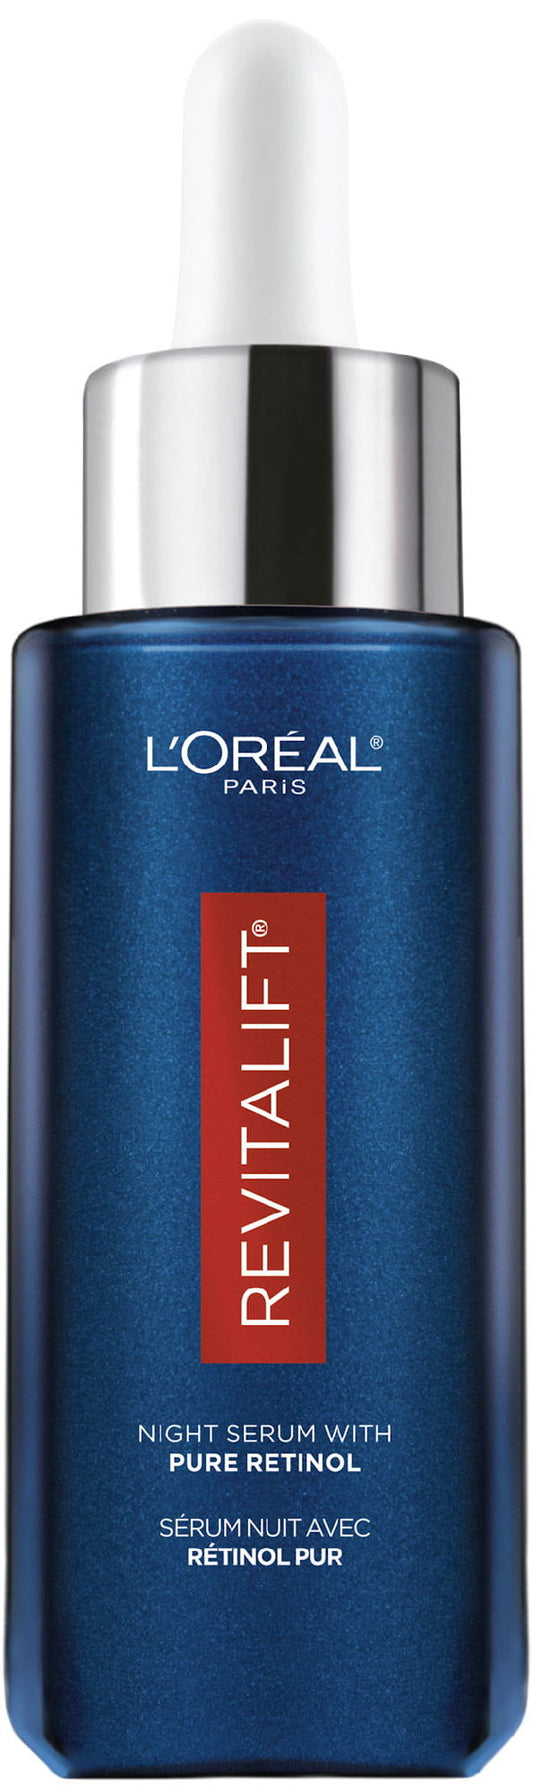 L'Oreal Paris Revitalift Pure Retinol Night Face Serum;  1 fl oz